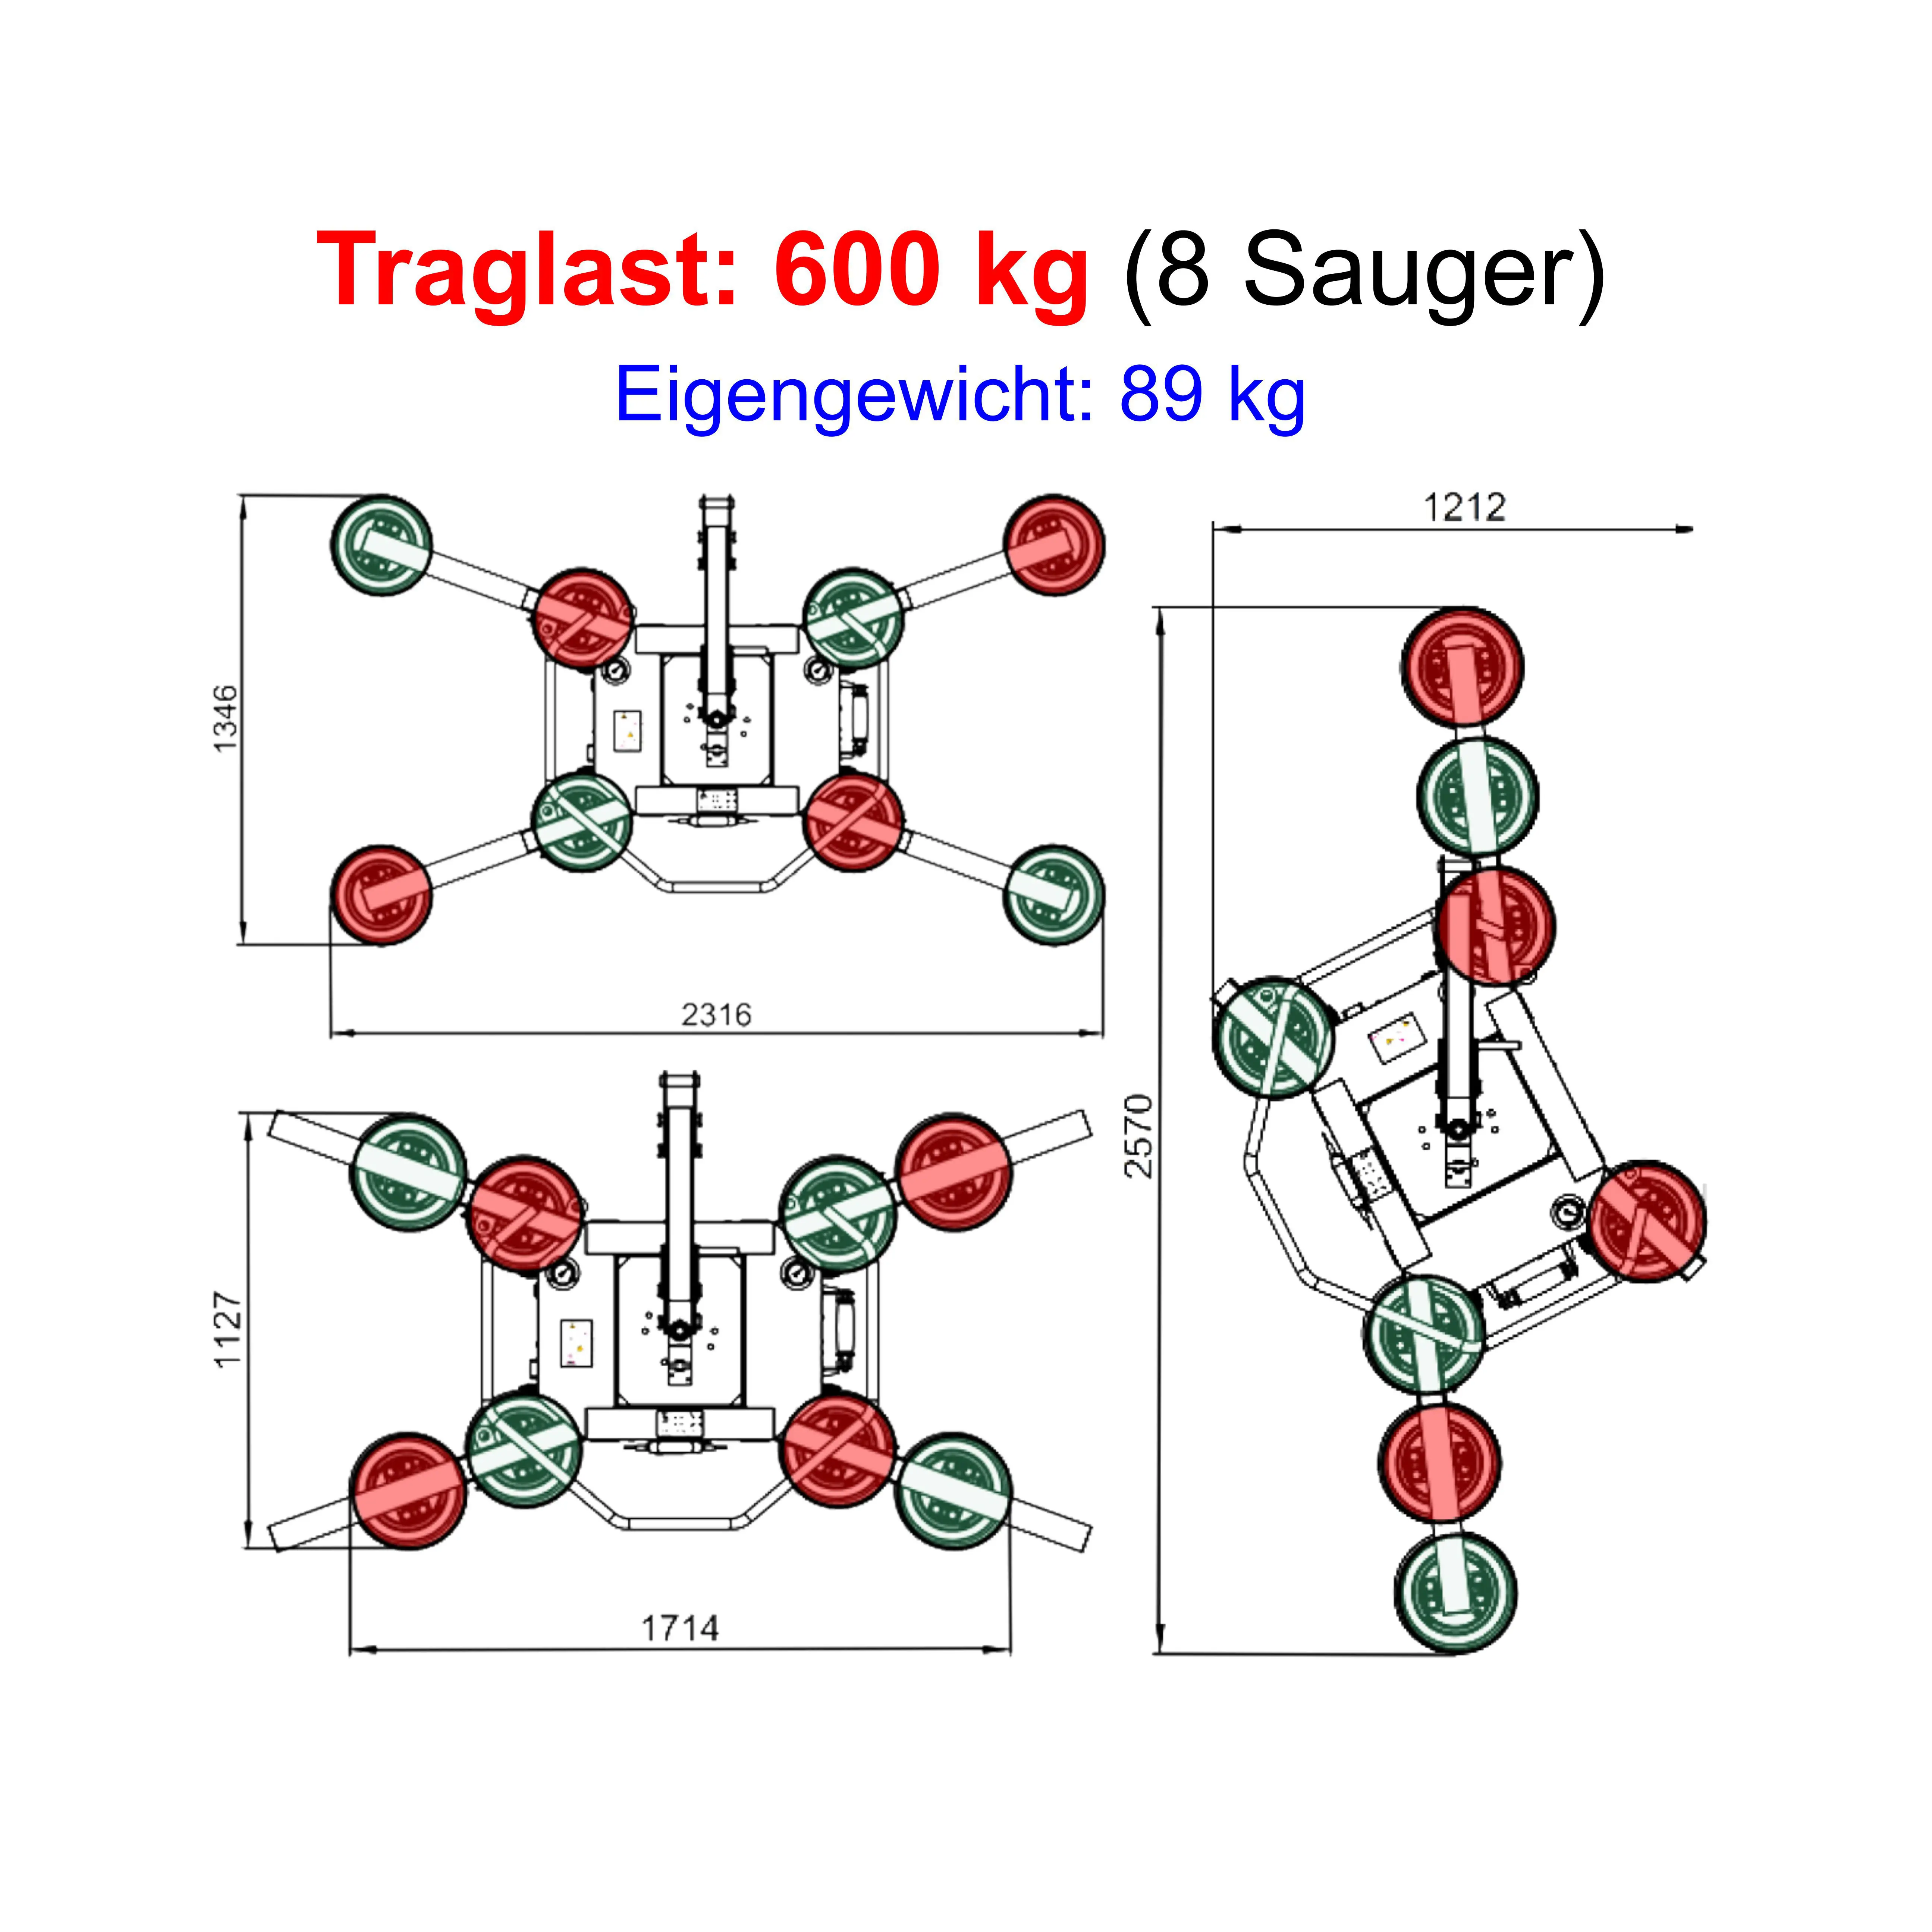 SAUGANLAGE UPG-600-2 von Glas Scholl